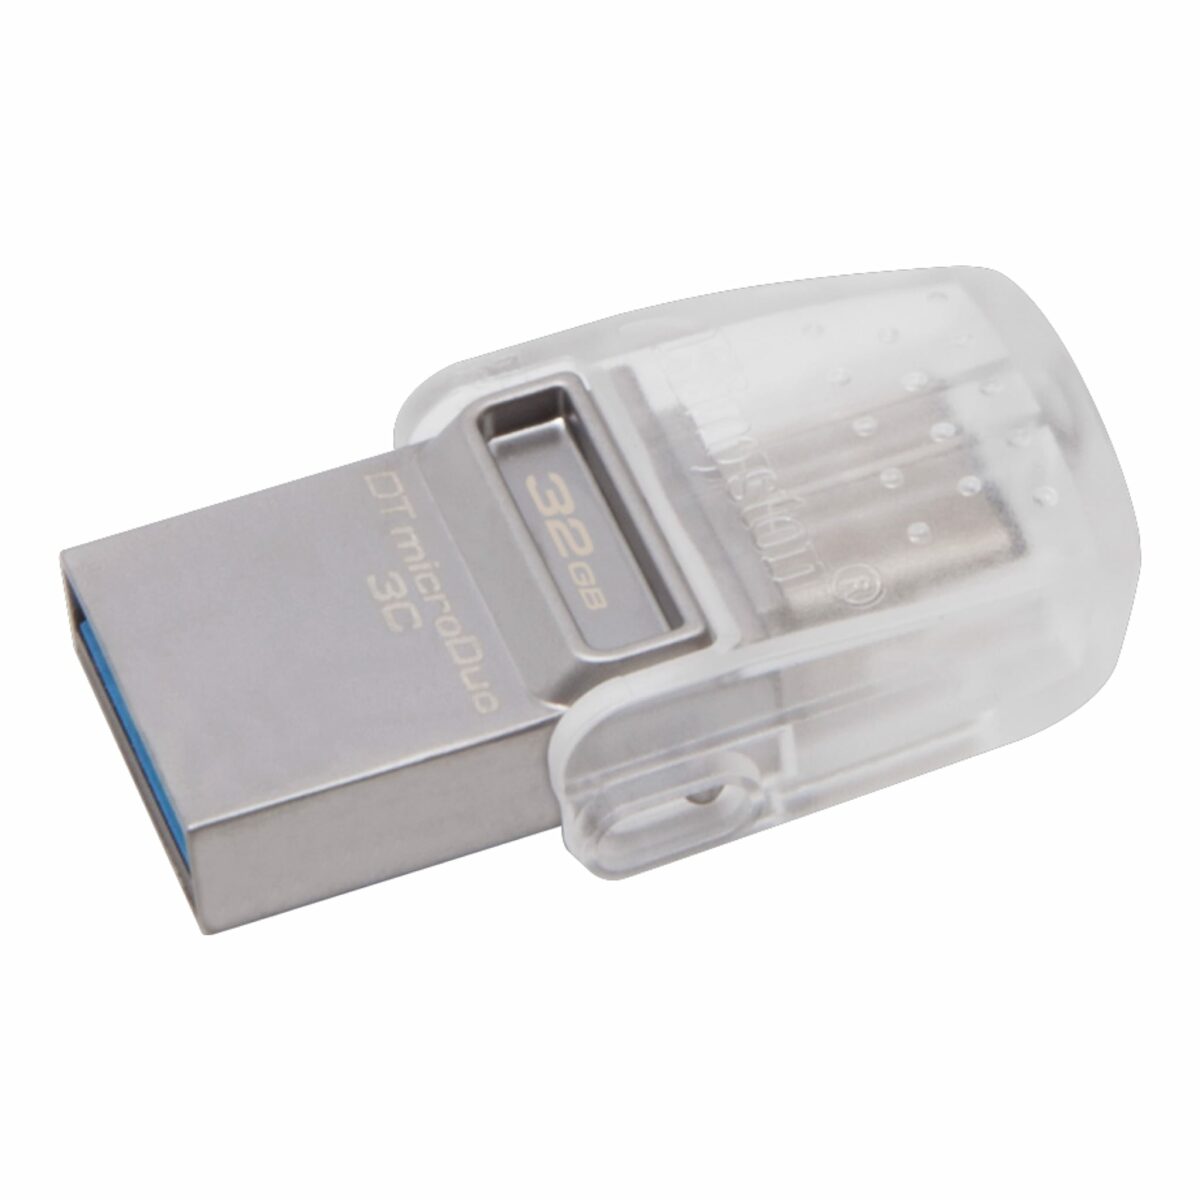 Kingstone Flash Memory OTG USB3.2+ Type-C 32GB [ DTDUO3C/32G USB3.0 ]